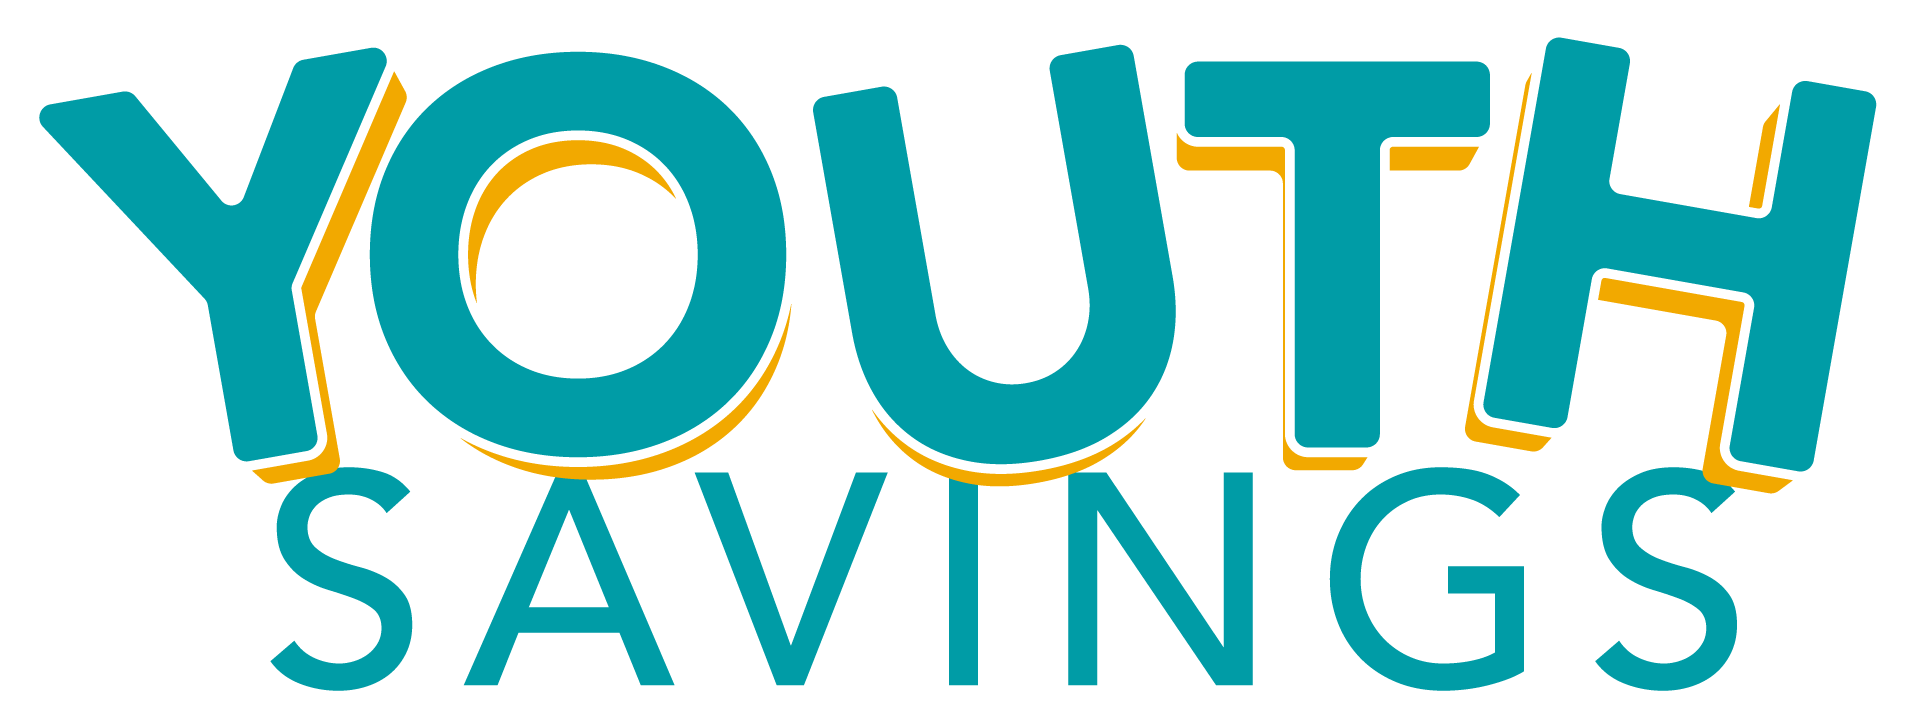 Youth Savings logo